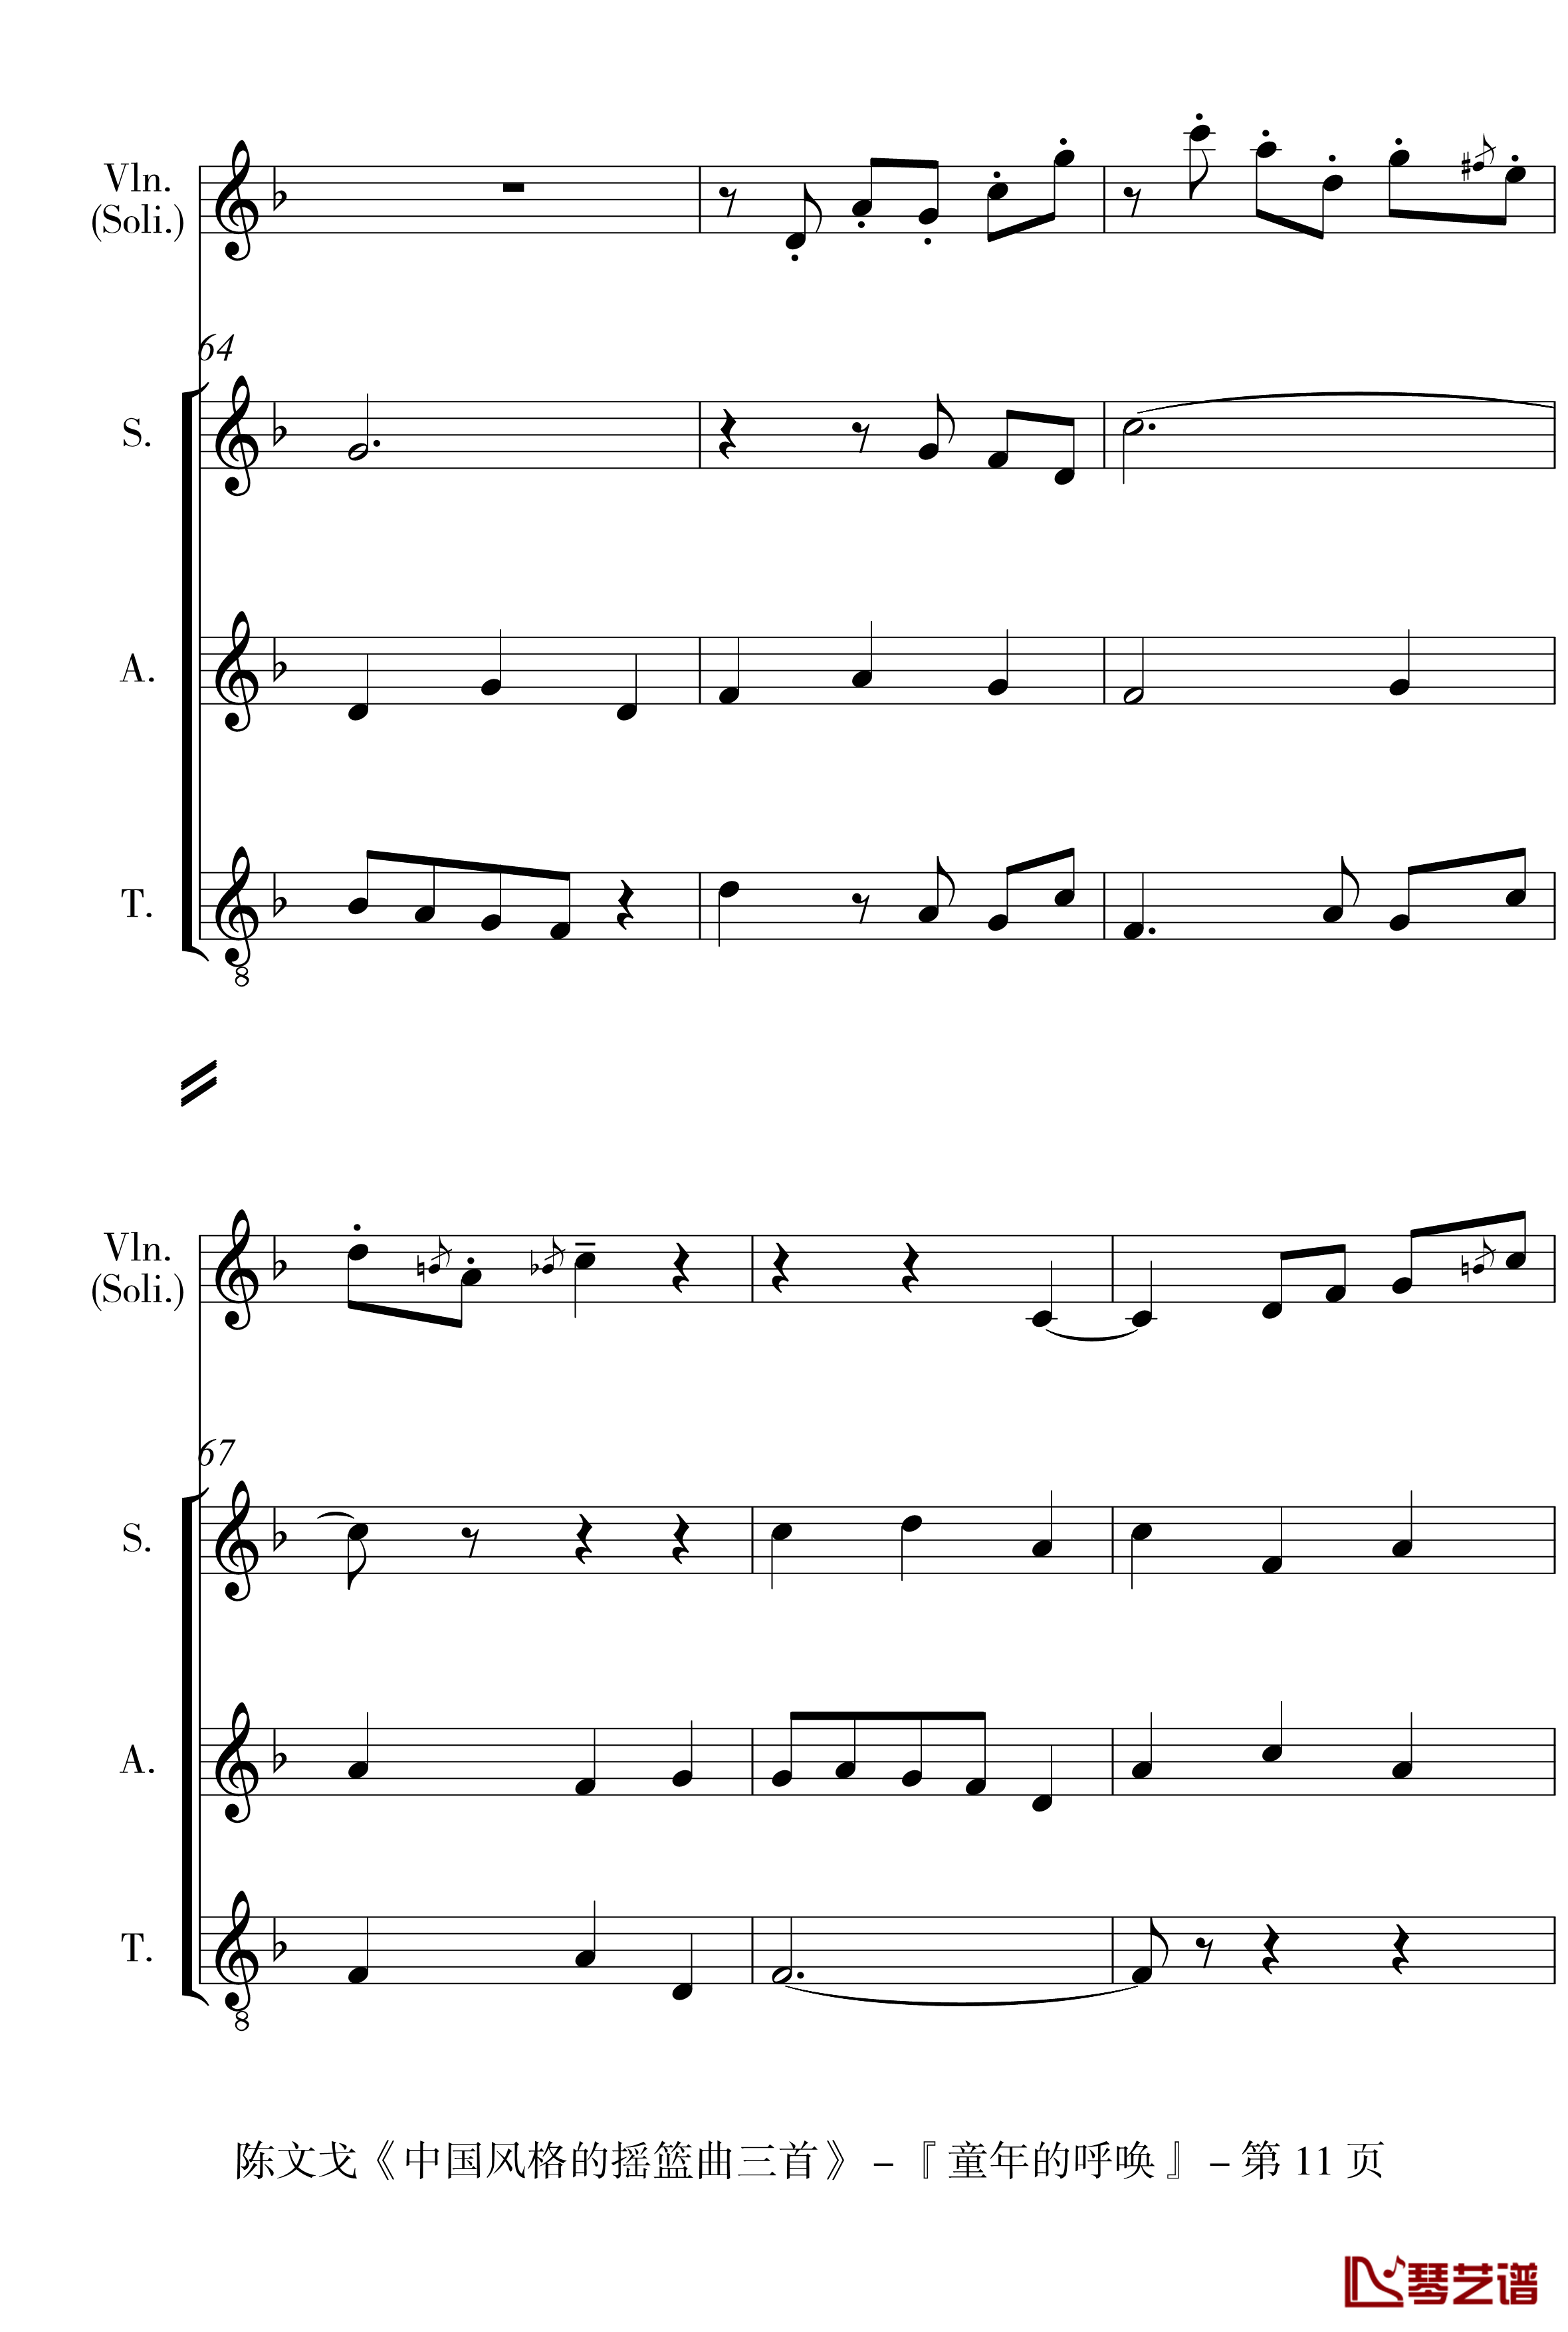 中国风格的合唱摇篮曲三首钢琴谱-I, II, III-陈文戈11